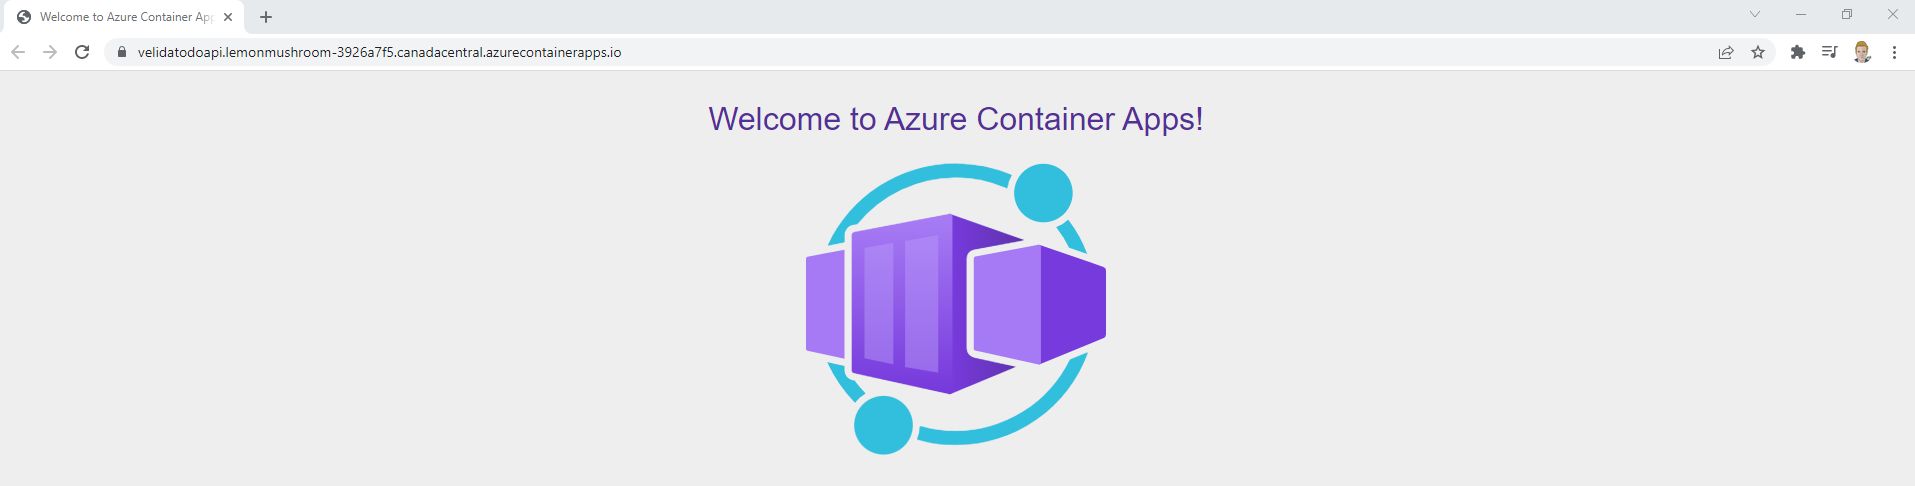 Создание и подготовка приложений контейнеров Azure с помощью Bicep